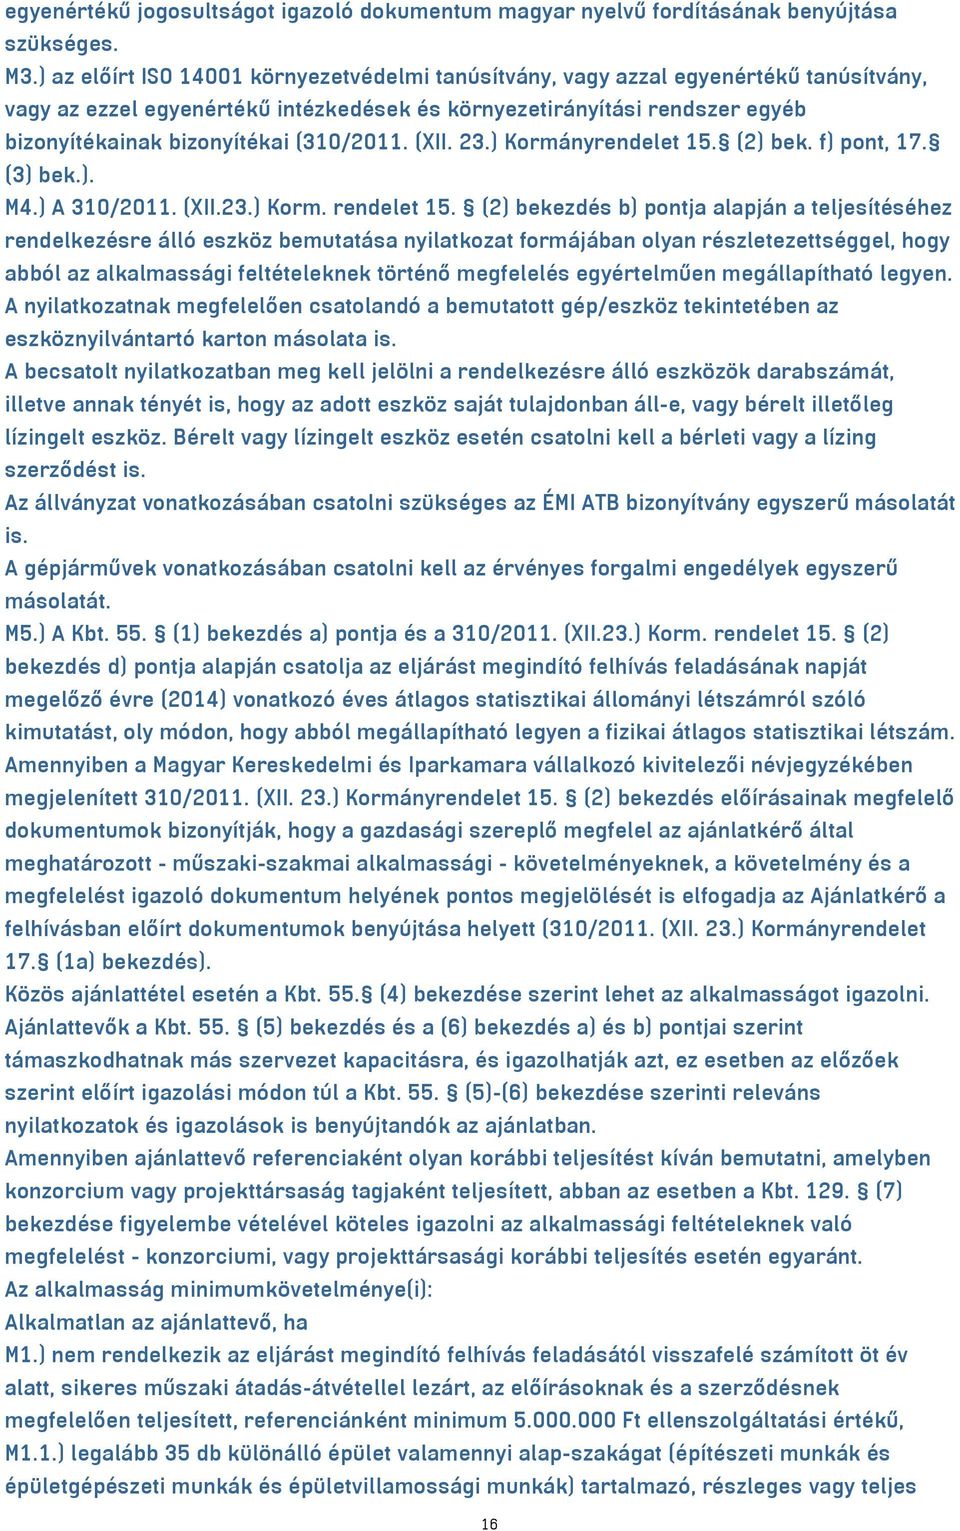 (310/2011. (XII. 23.) Kormányrendelet 15. (2) bek. f) pont, 17. (3) bek.). M4.) A 310/2011. (XII.23.) Korm. rendelet 15.